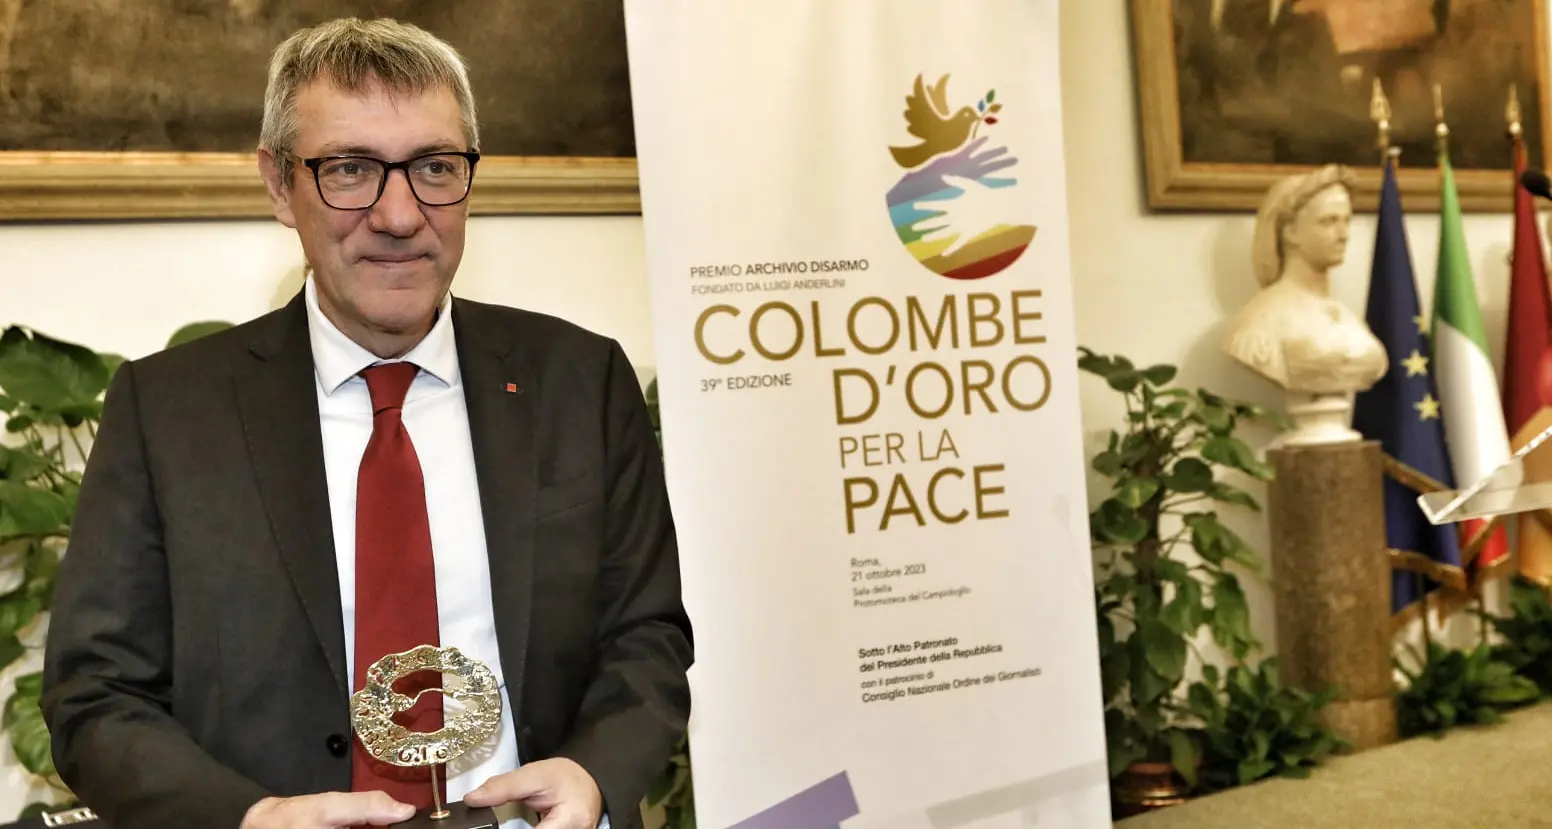 39ª edizione Colombe d'oro per la Pace, Maurizio Landini 'Personalità internazionale' dell'anno